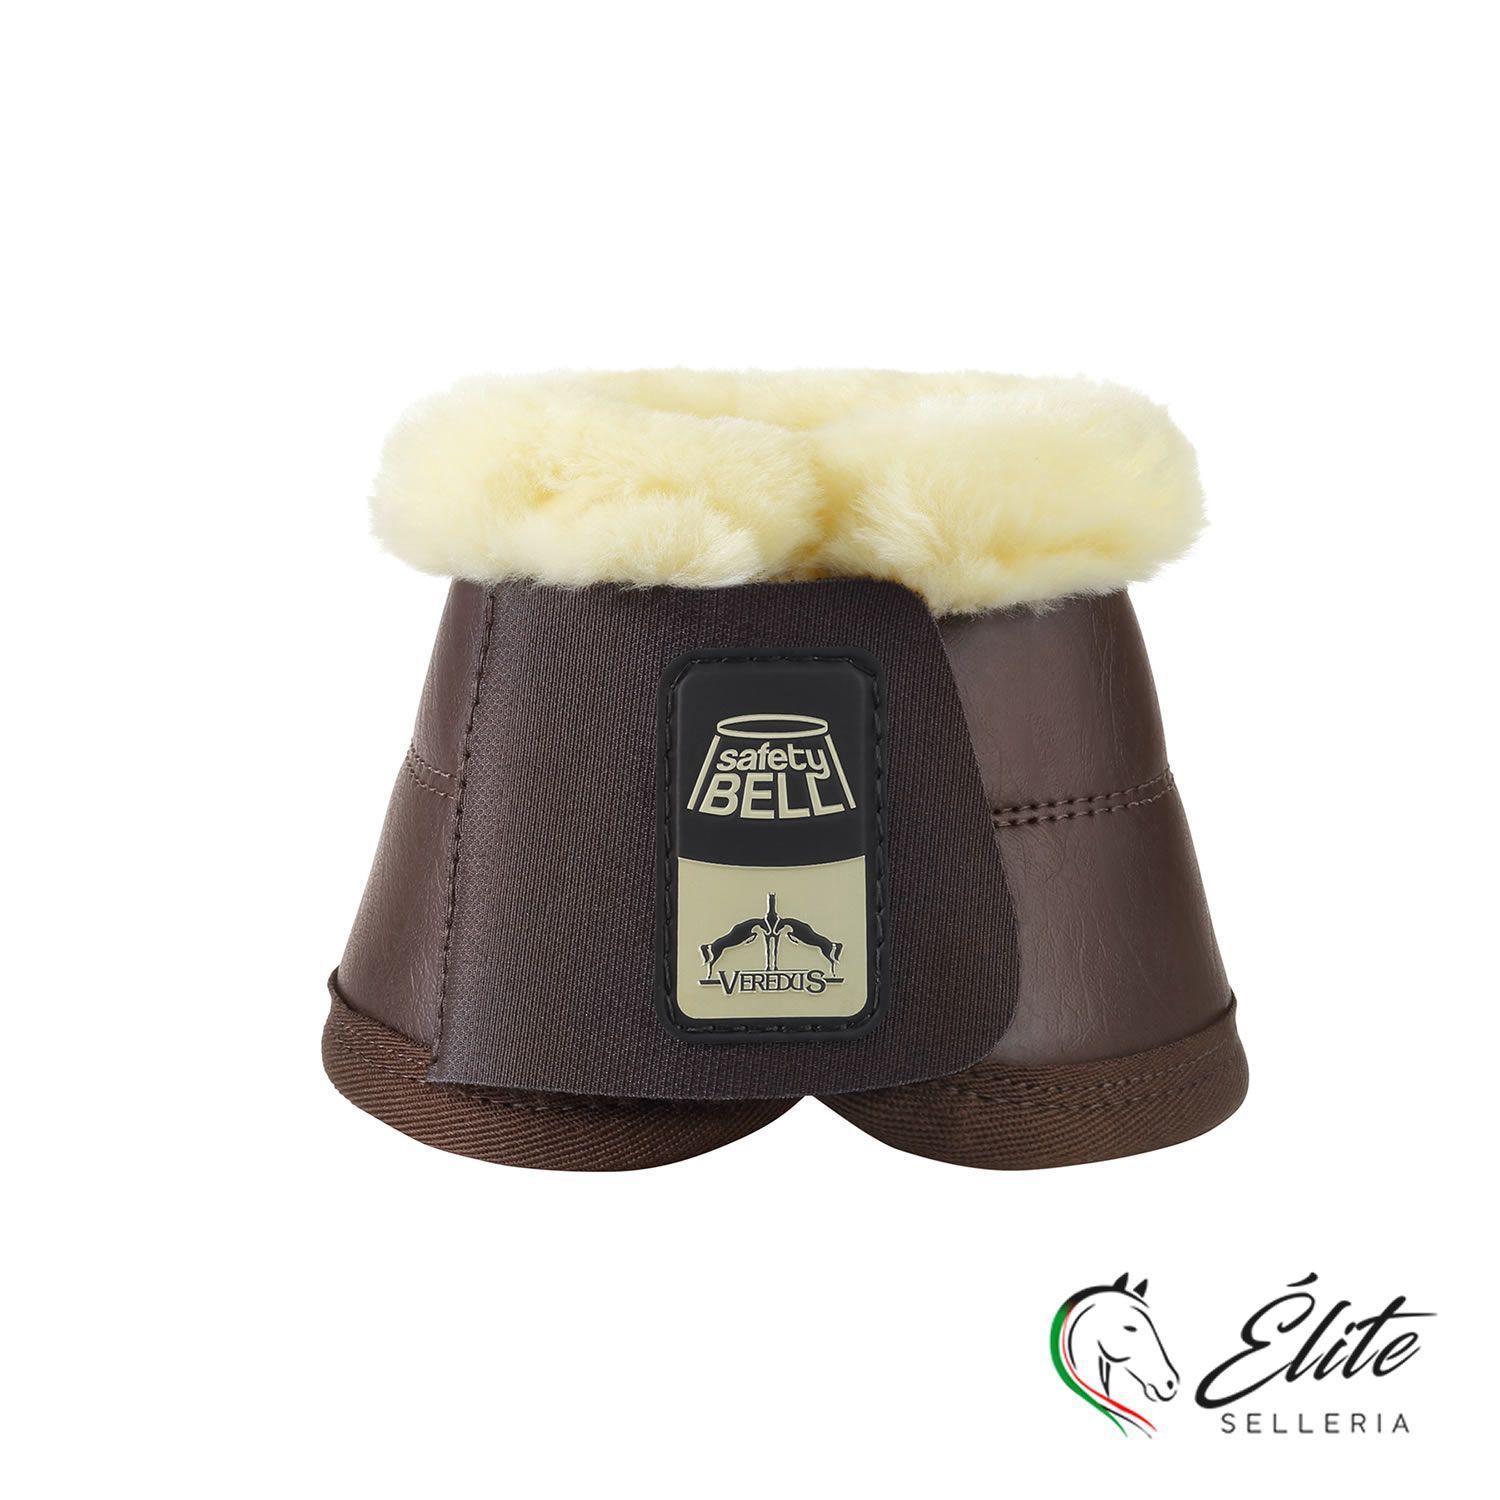 Vendita online Safety-Bell Save The Sheep Brown - Selleria Élite del cavallo - Palermo - Sicilia- Italia